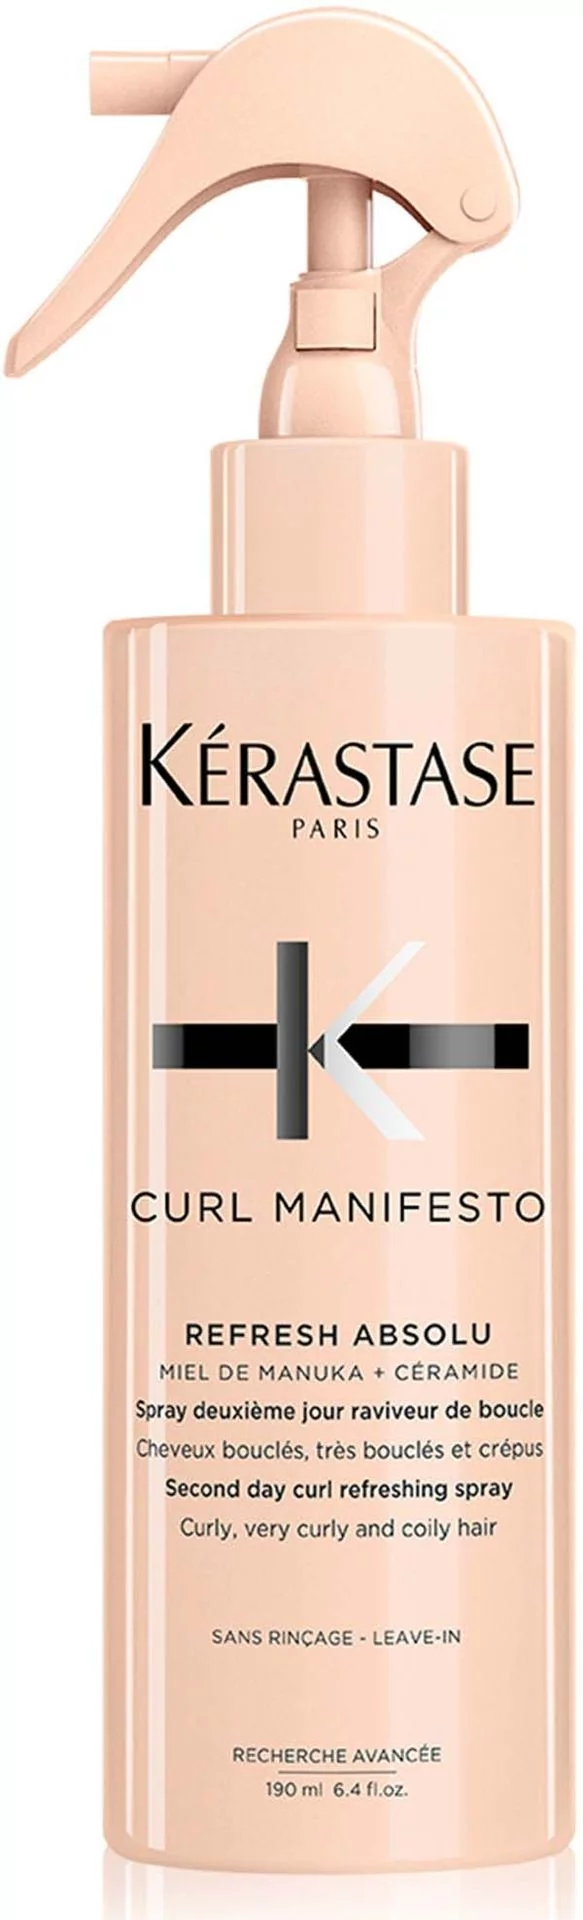 Kerastase Curl Manifesto Refresh Absolu spray odświeżający do włosów kręconych i falowanych 190 ml